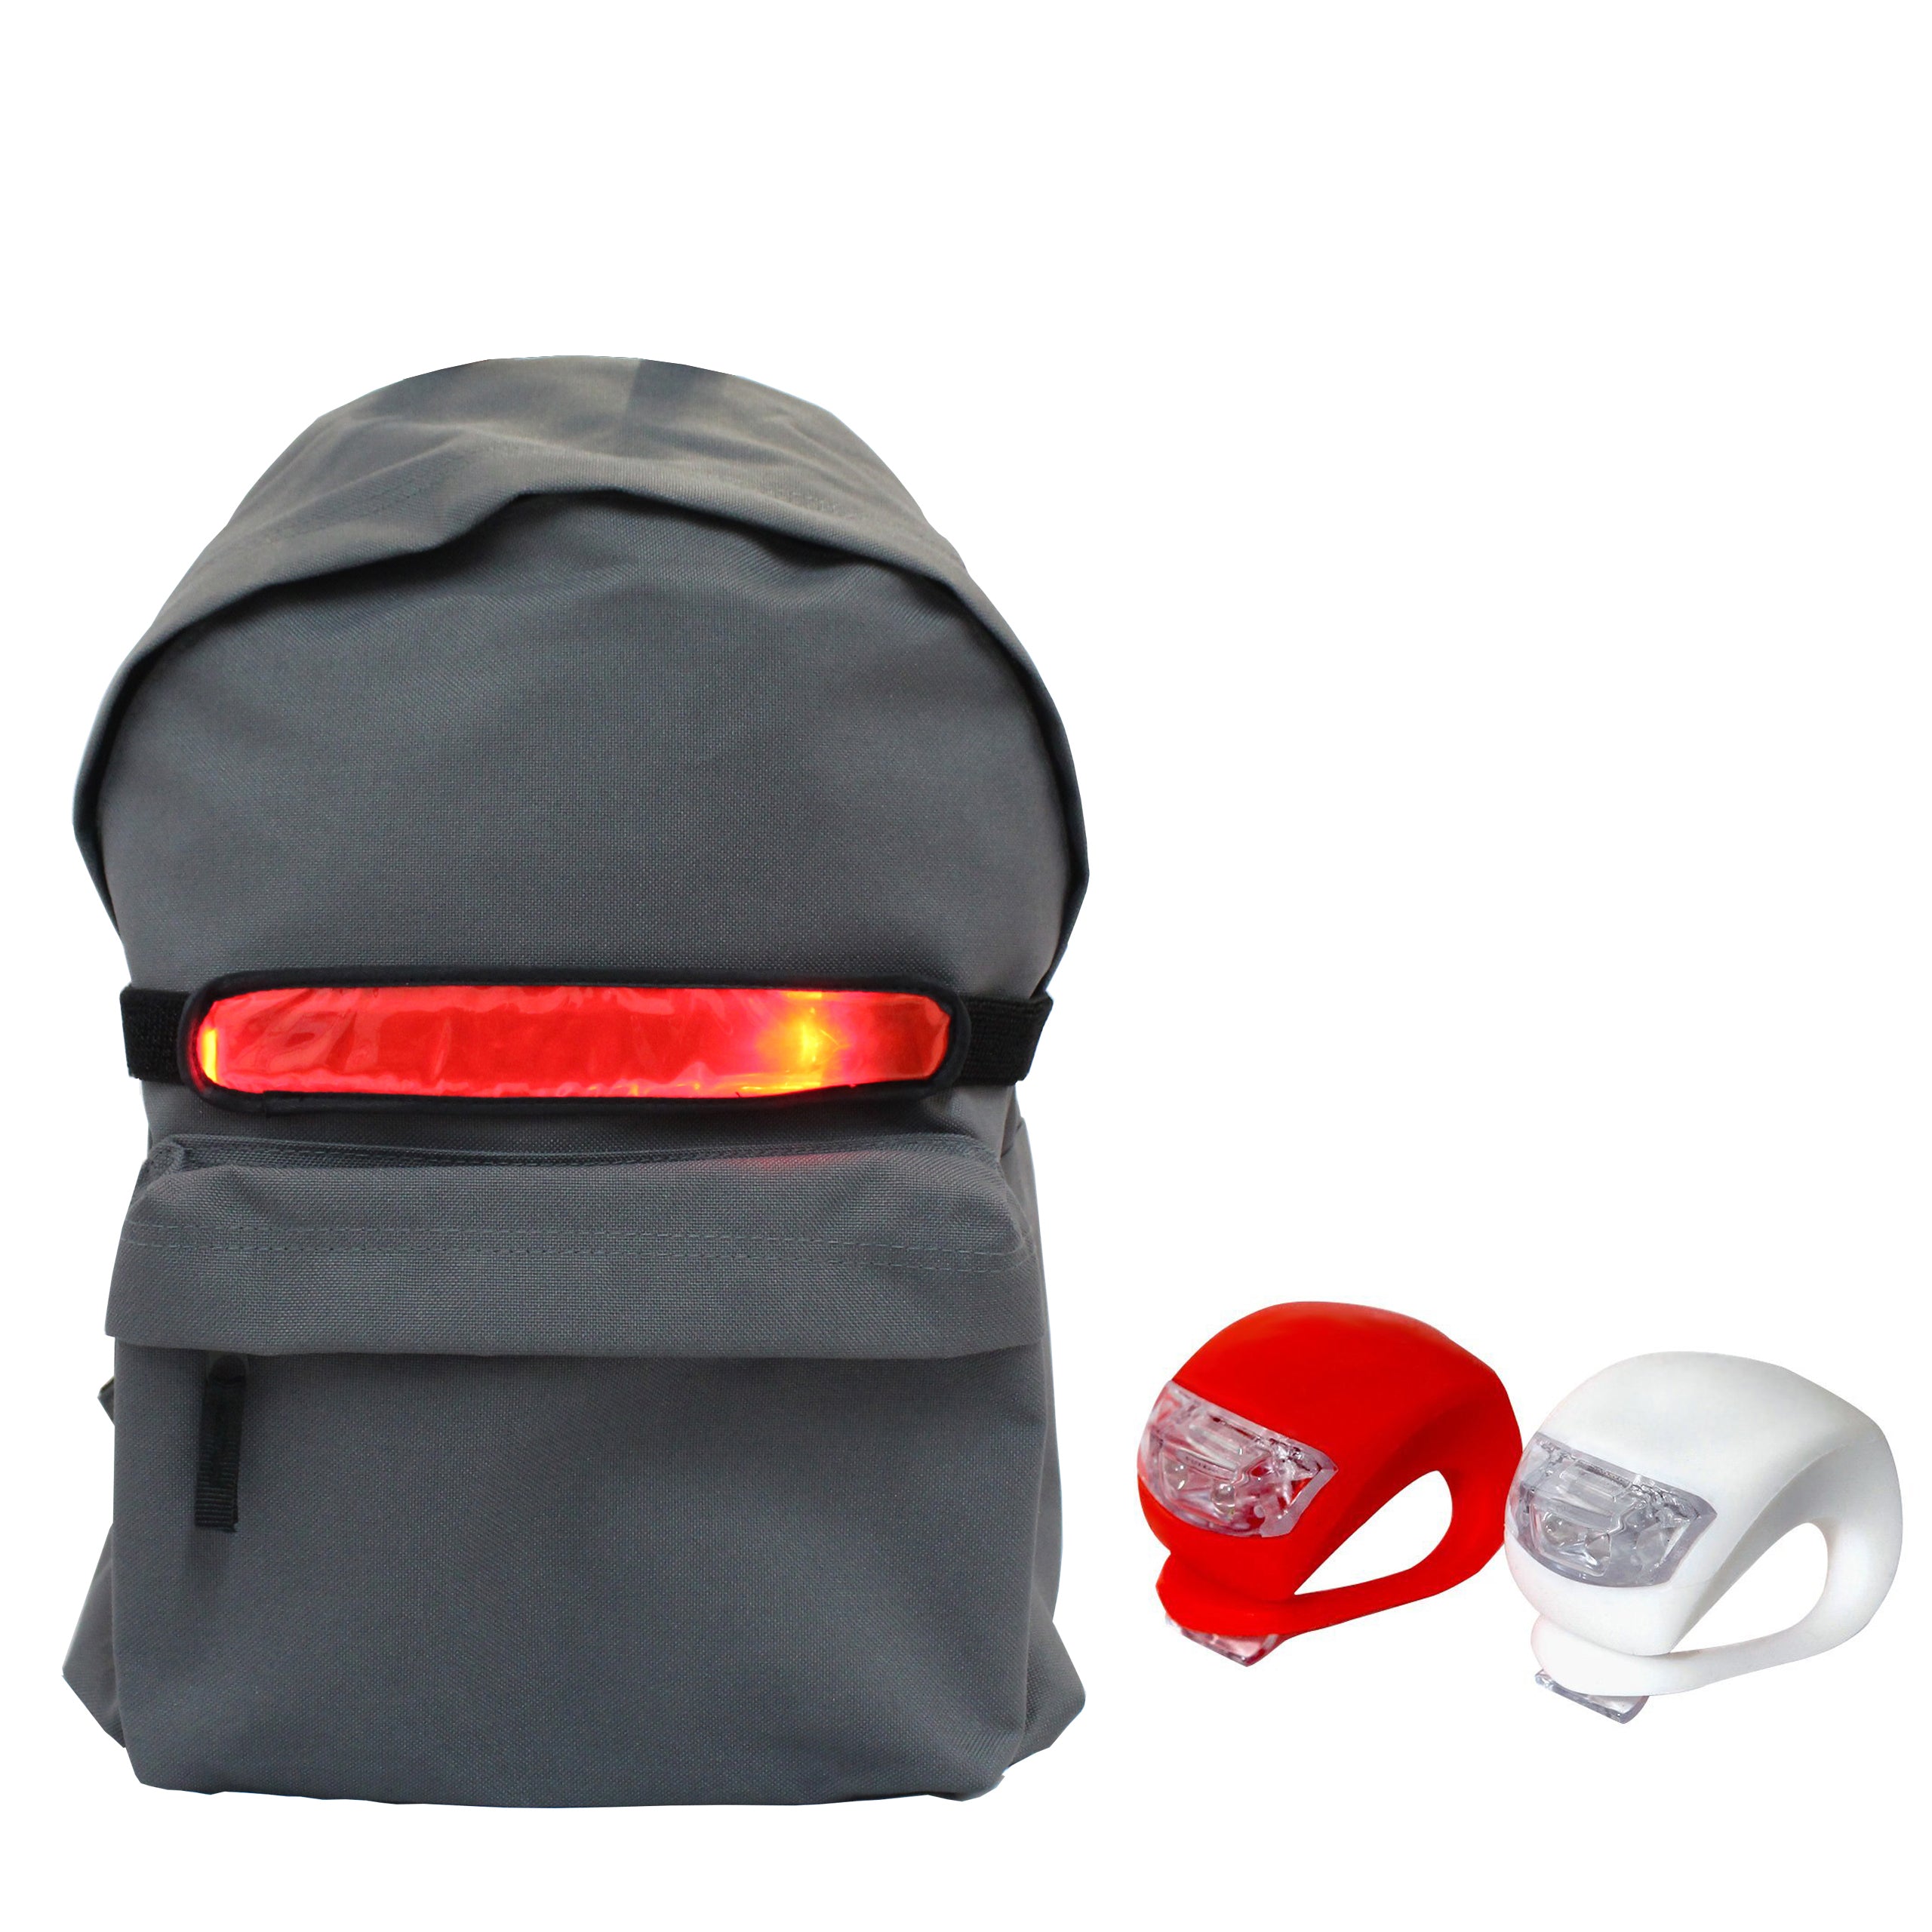 backpack bike light